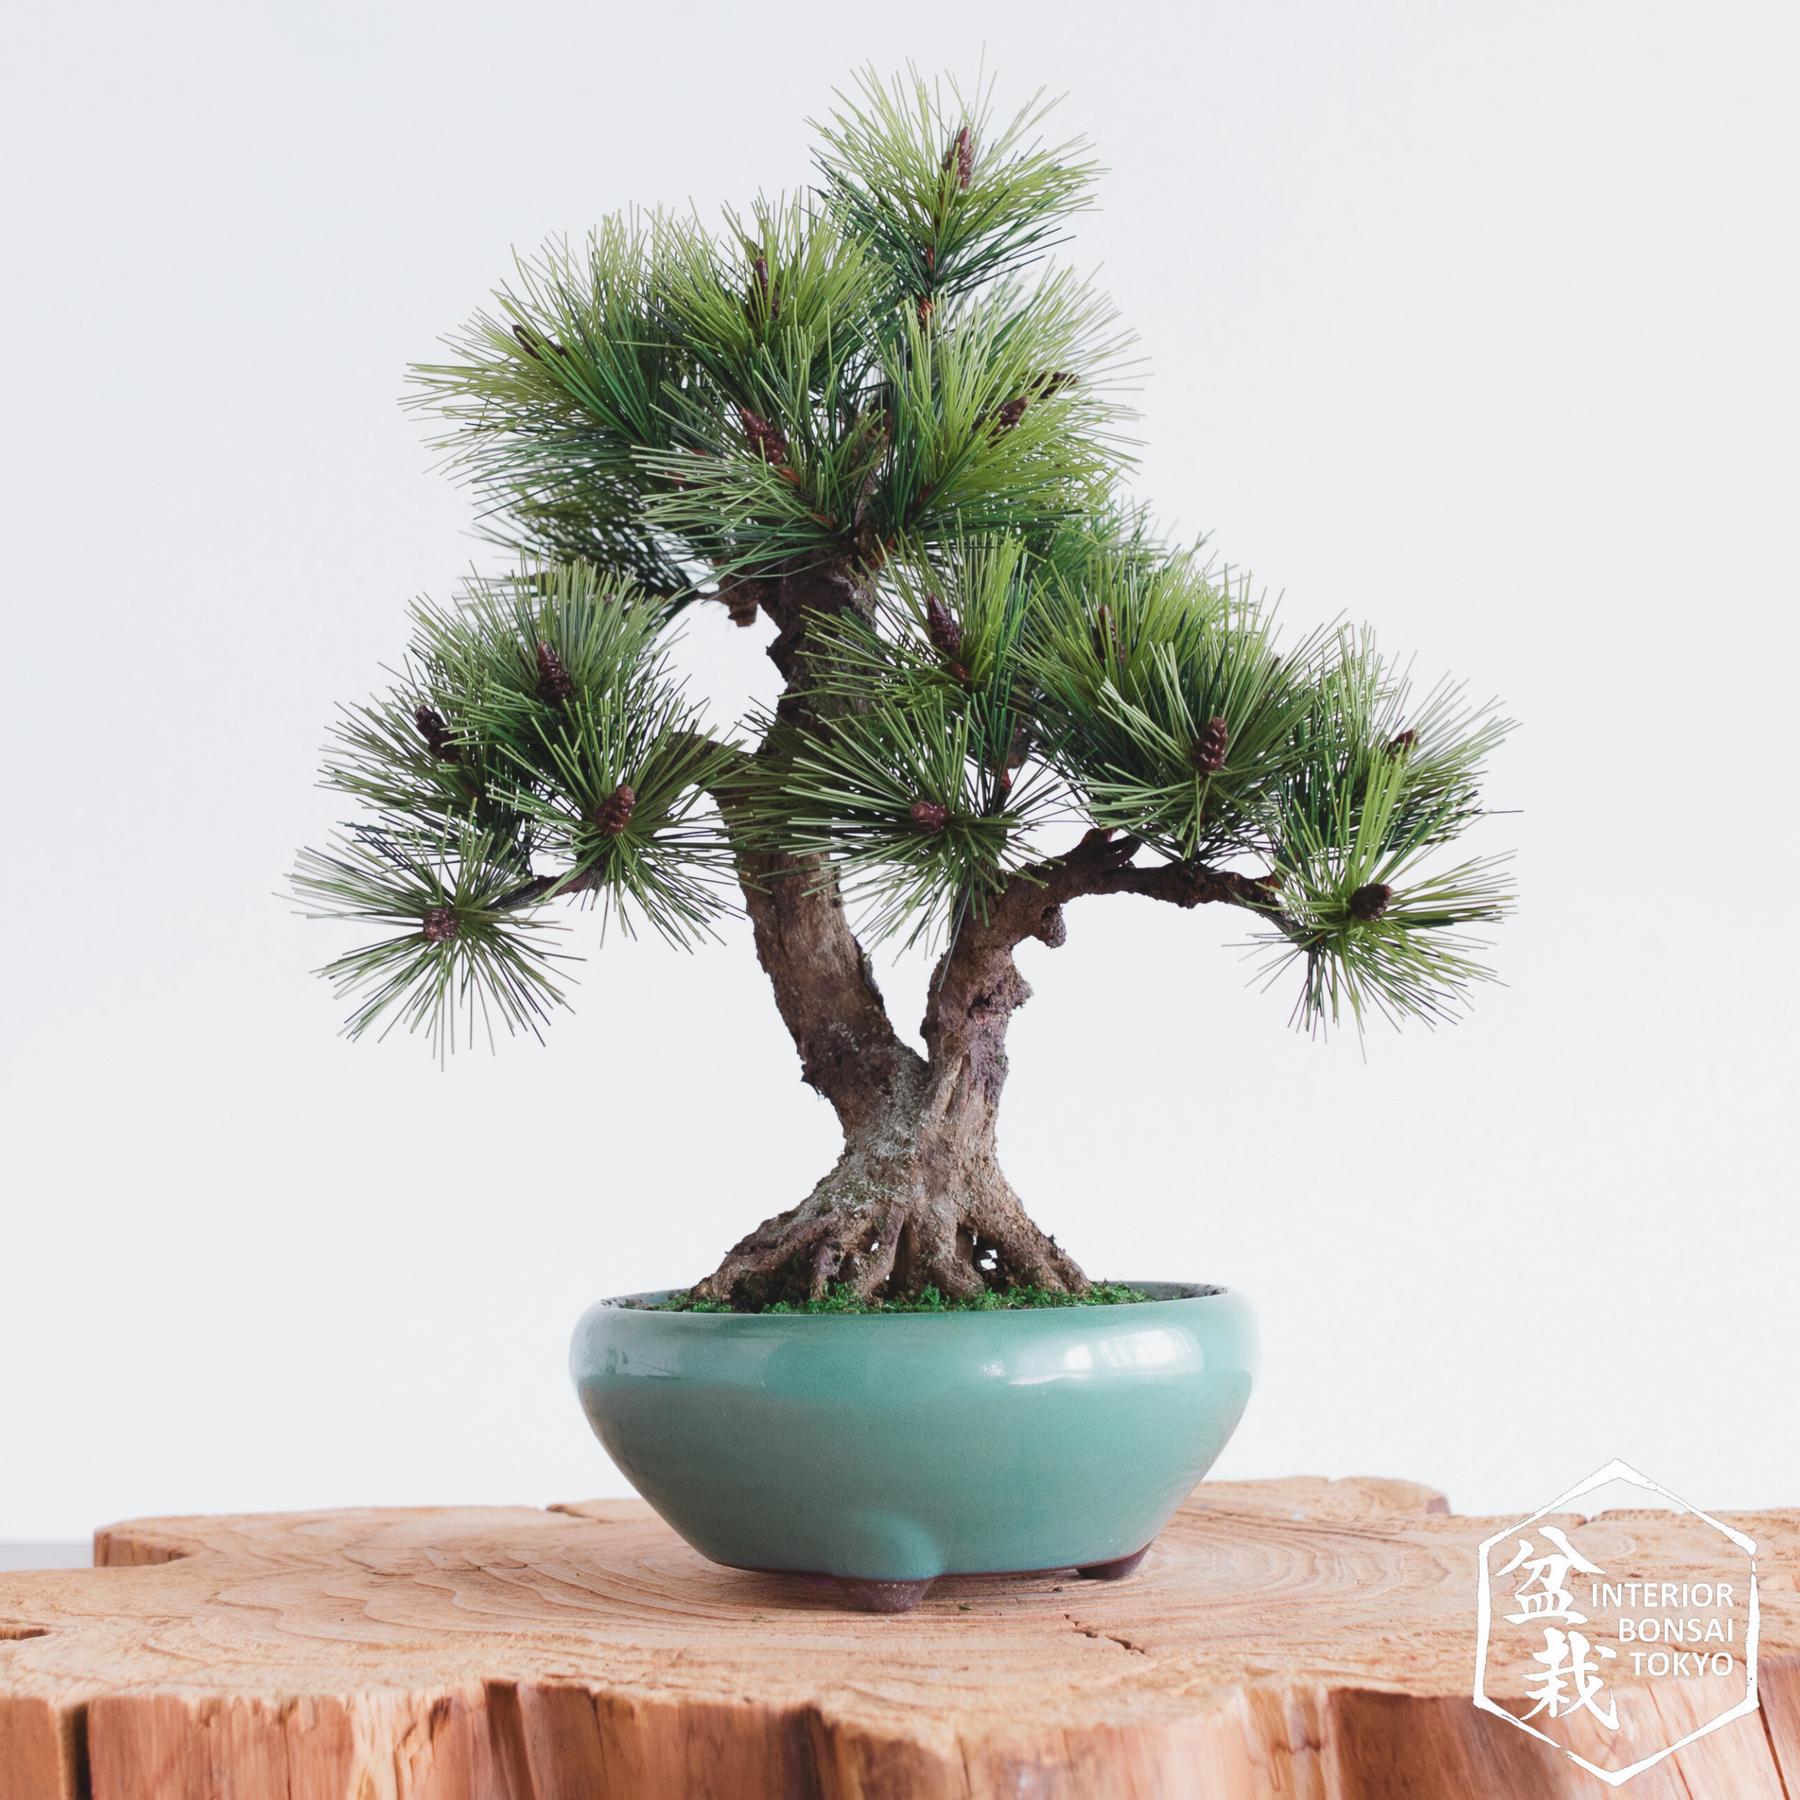 Come fare un bonsai artificiale - Fare Bonsai - Il bonsai artificiale